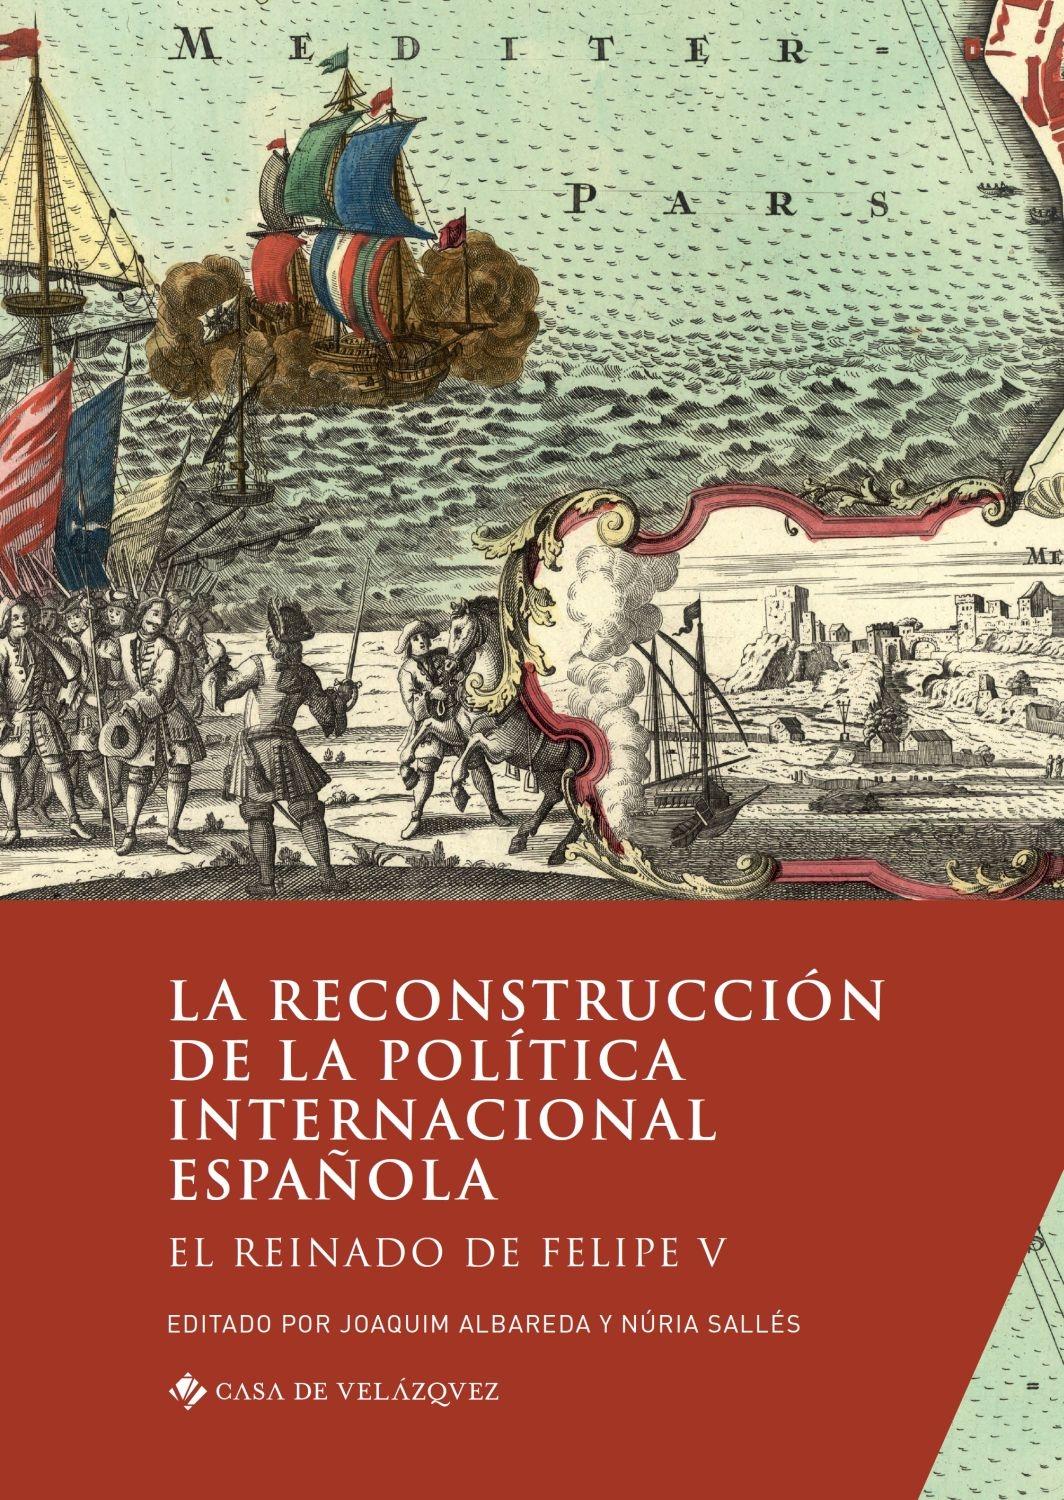 La reconstrucción de la política internacional española "El reinado de Felipe V"